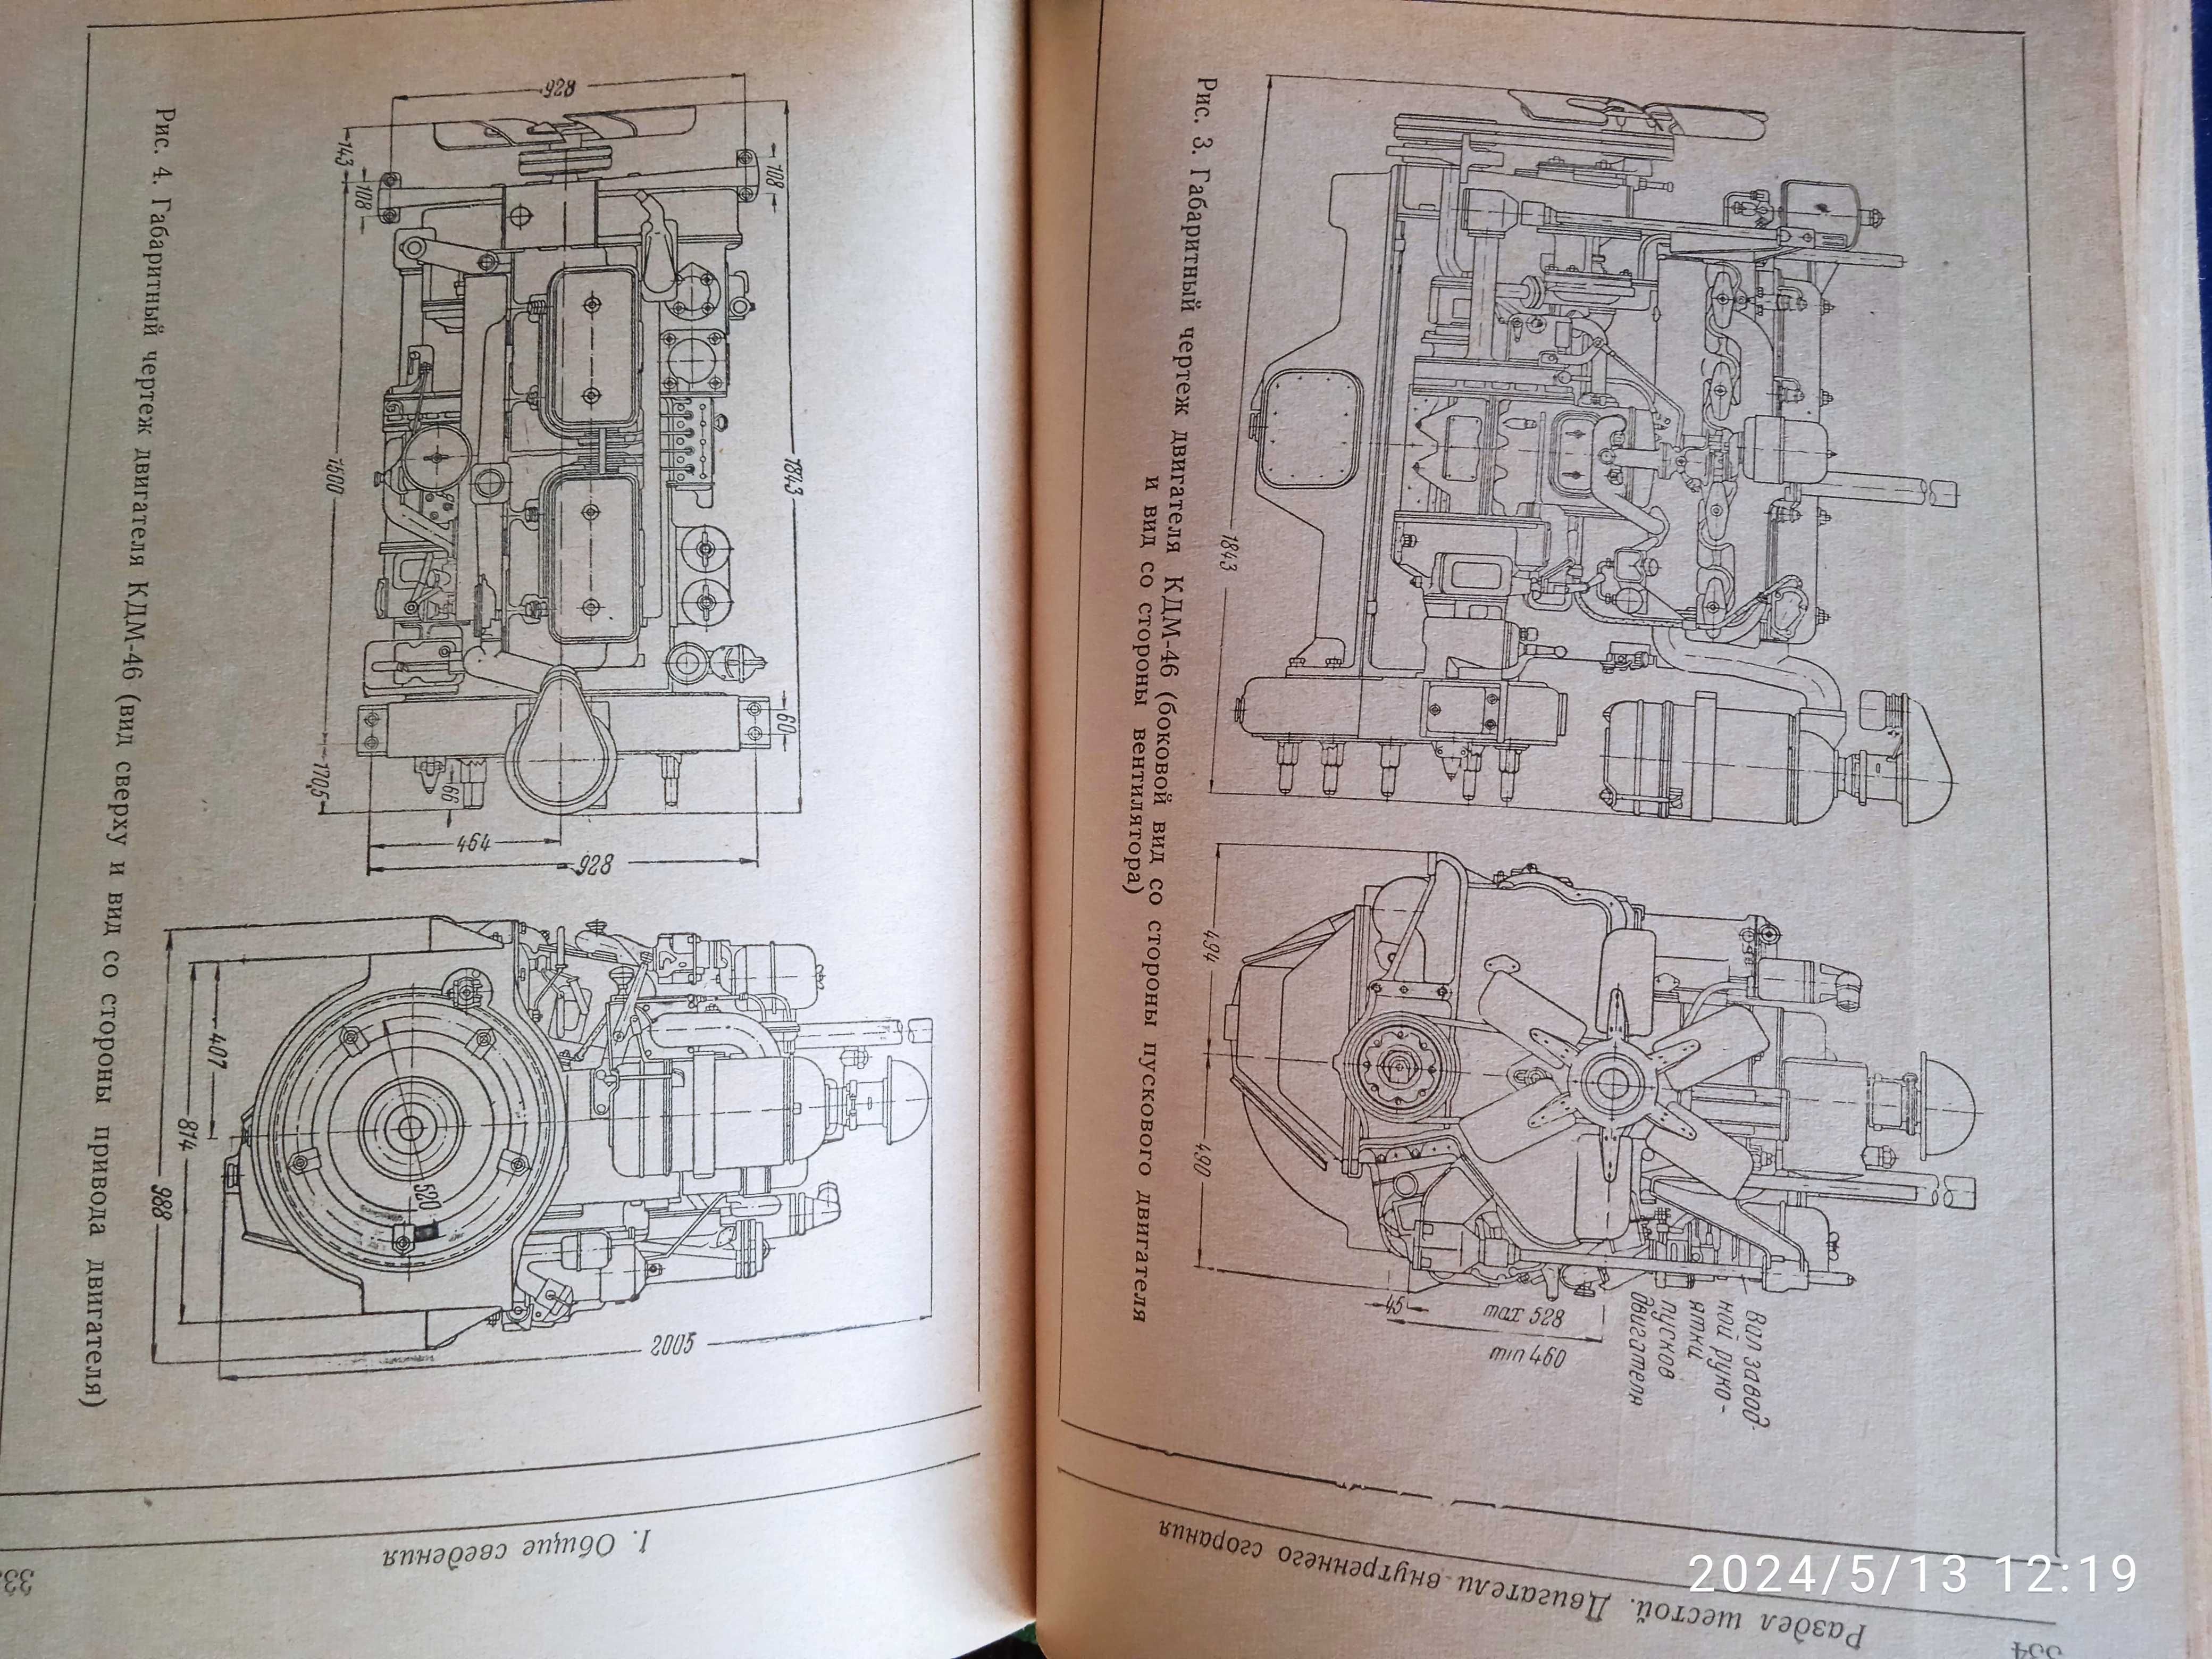 Справочник энергетика на строительстве, 1960 год